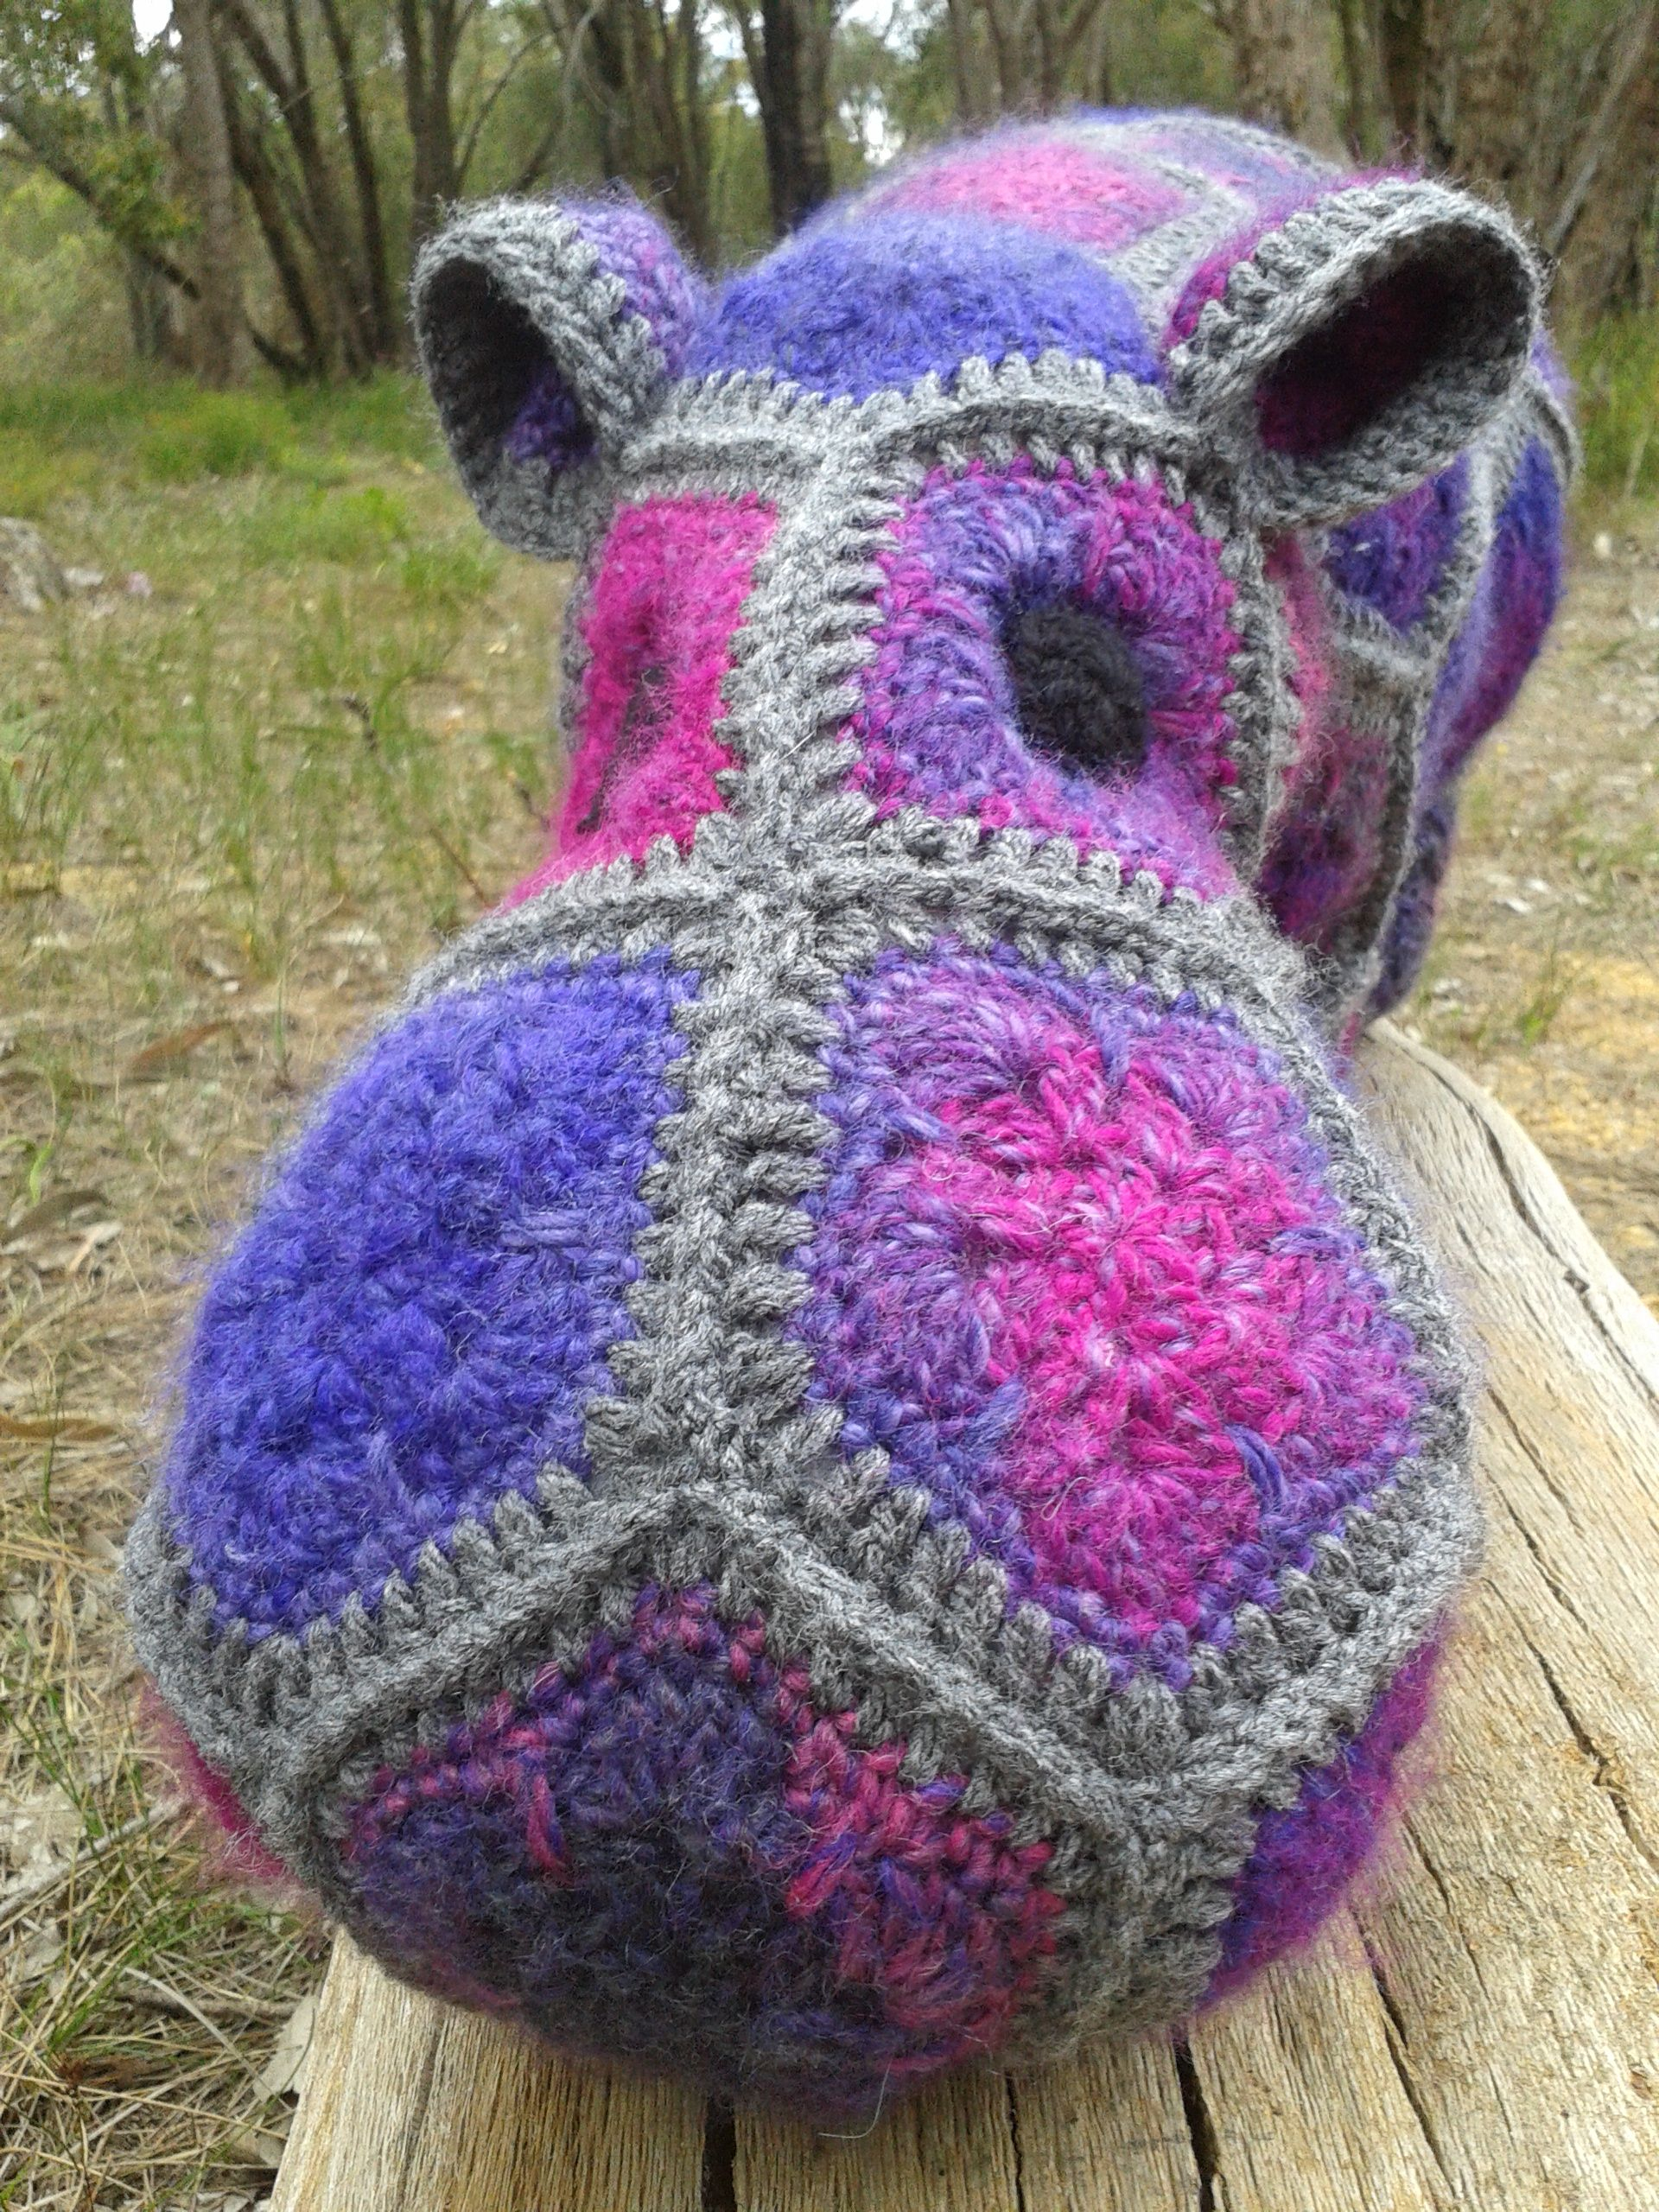 Crochet Sweet Pea Flower Pattern Pin Rhonda Smith On Crochet Pinterest Crochet Crochet